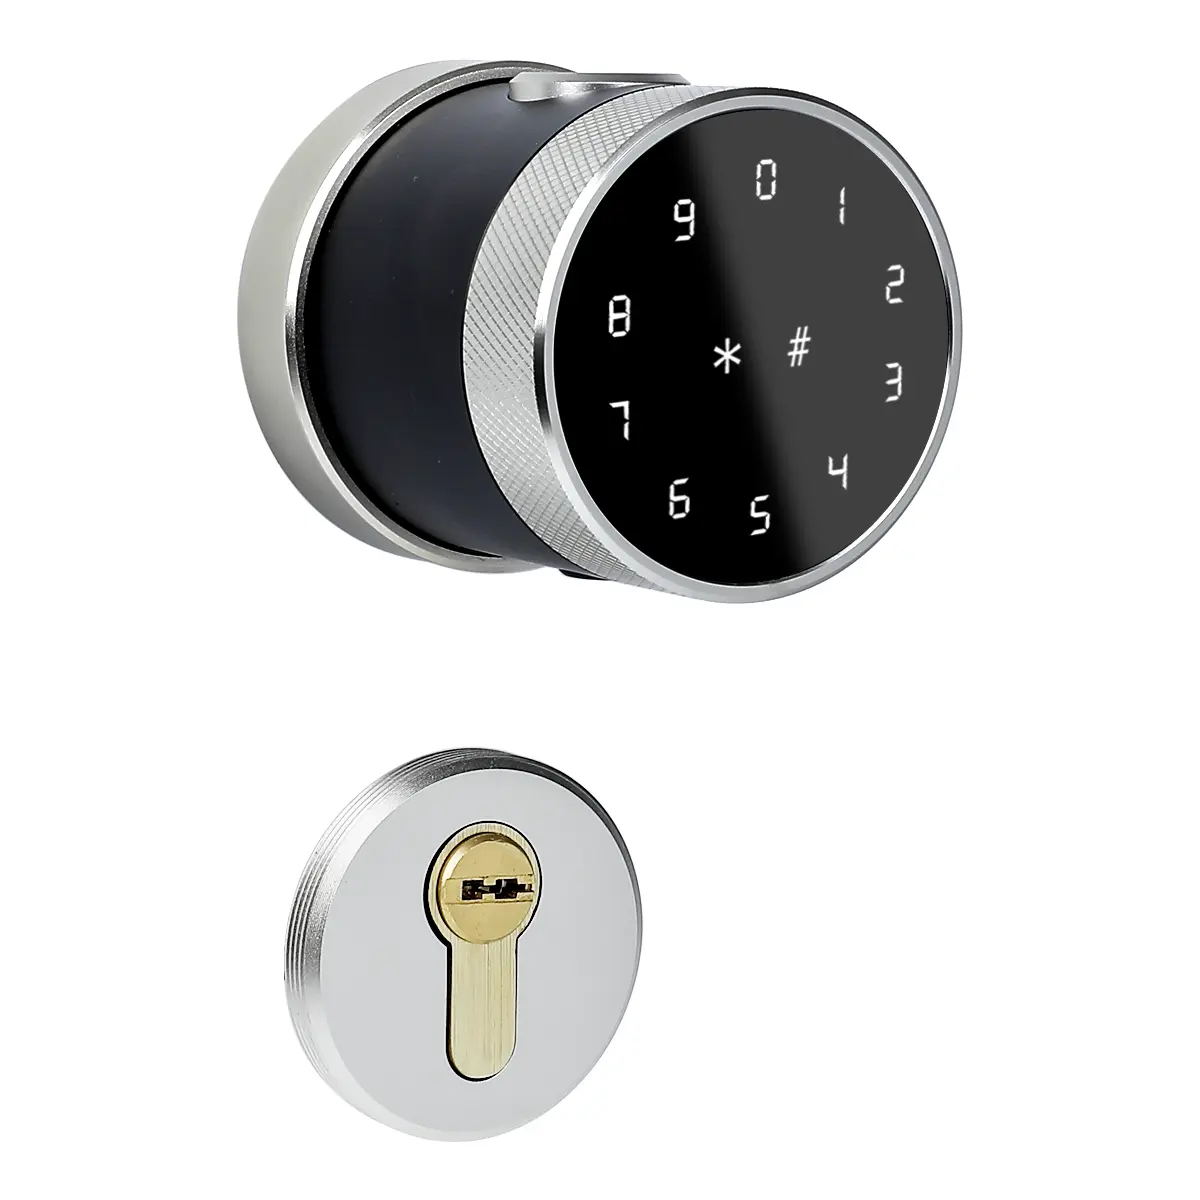 Have you used smart door locks in your home, are smart door locks safe?